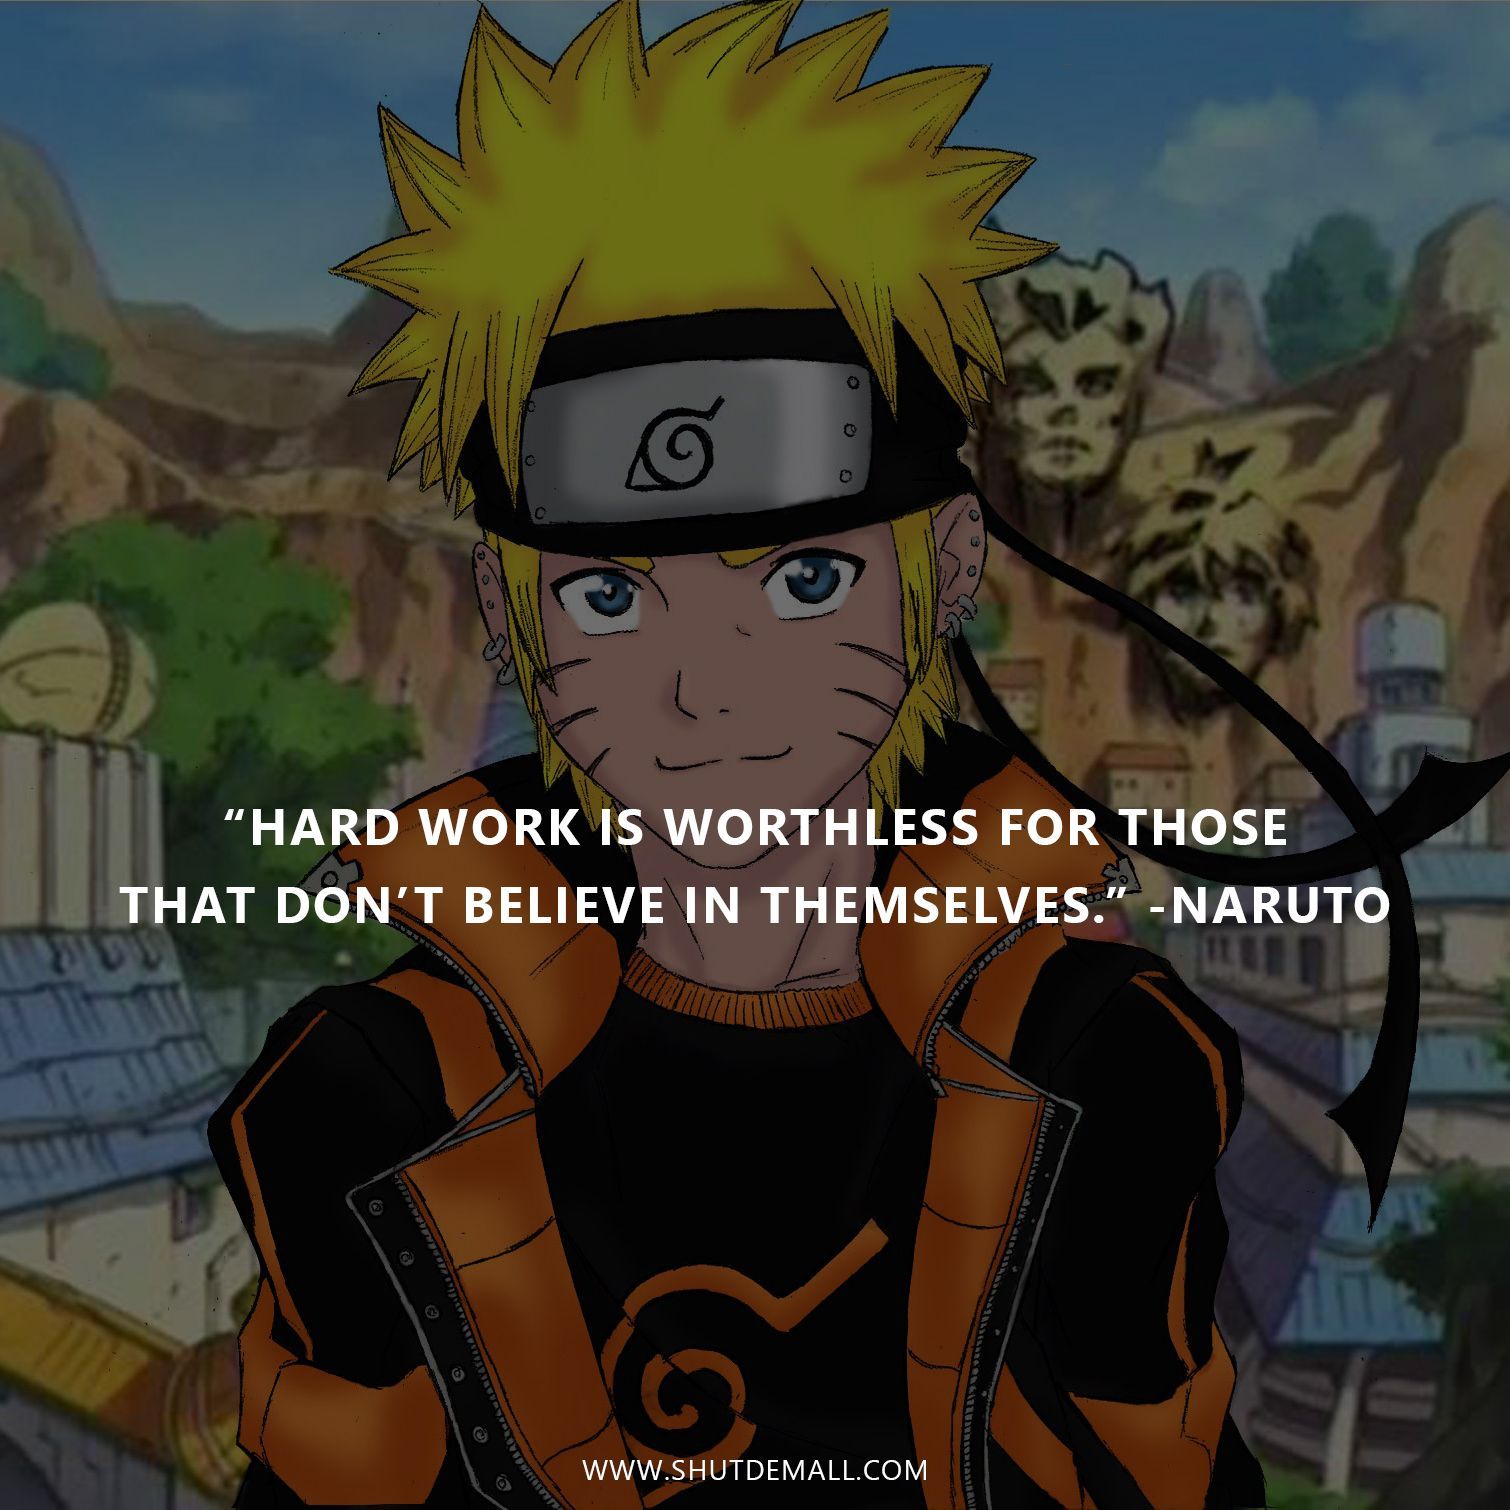 Shut Dem All: Anime Quotes. Naruto quotes, Naruto uzumaki, Anime quotes